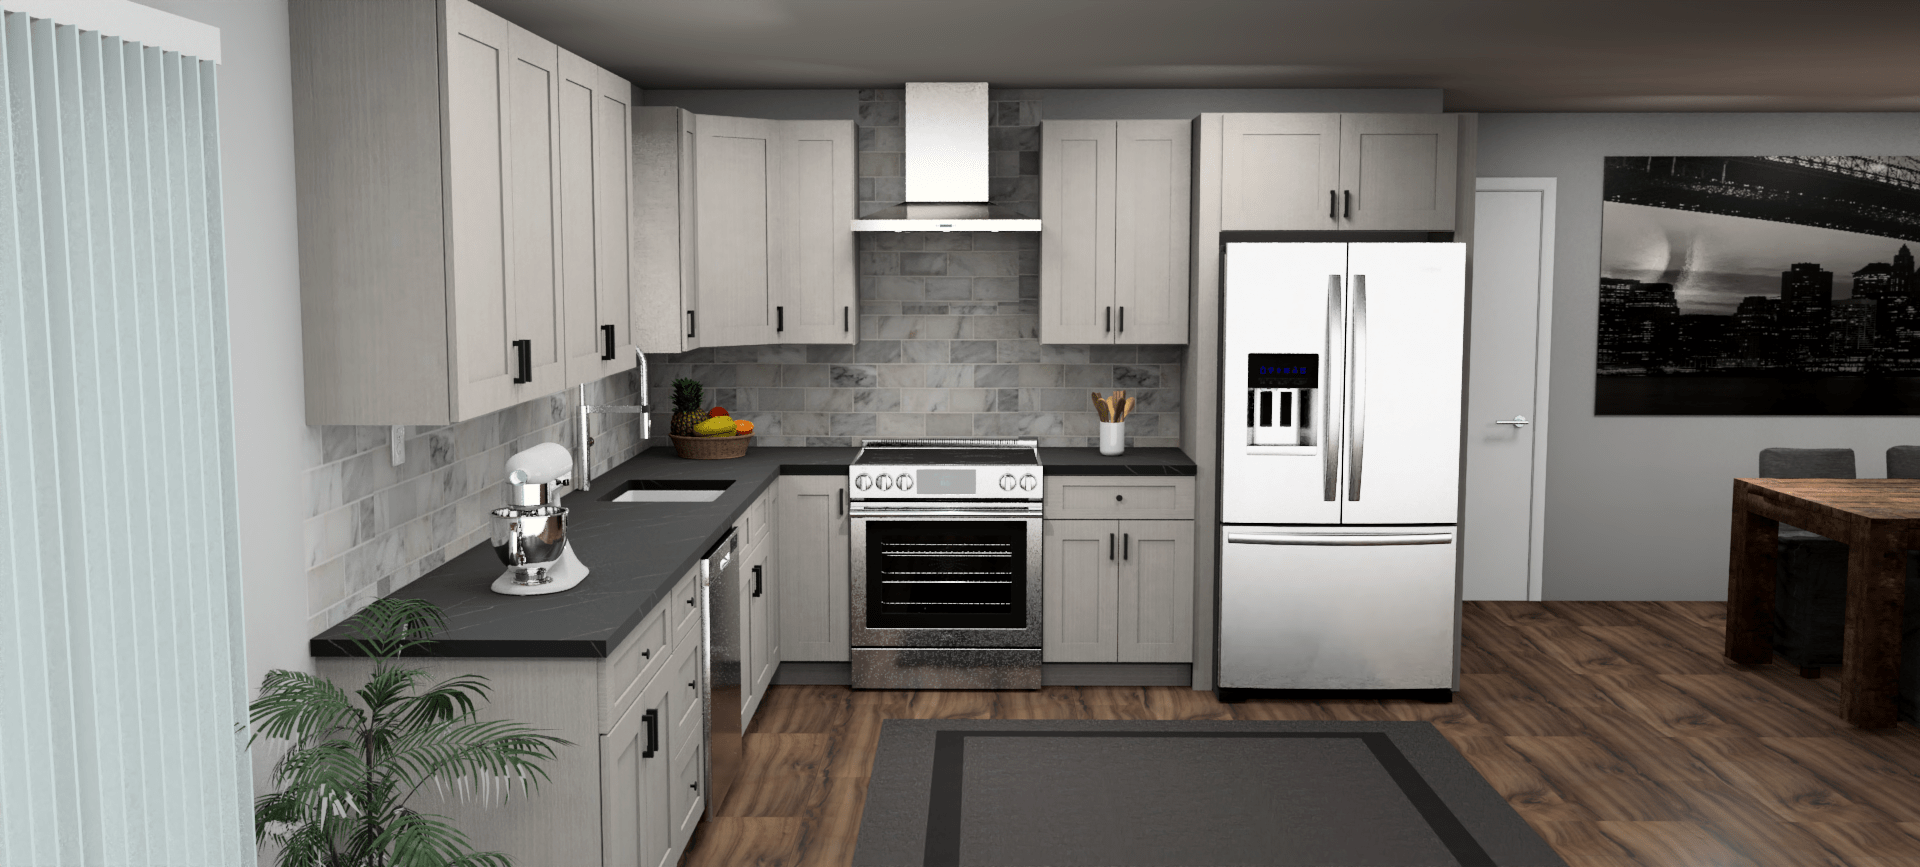 Fabuwood Allure Galaxy Horizon 12 x 11 L Shaped Kitchen Front Layout Photo